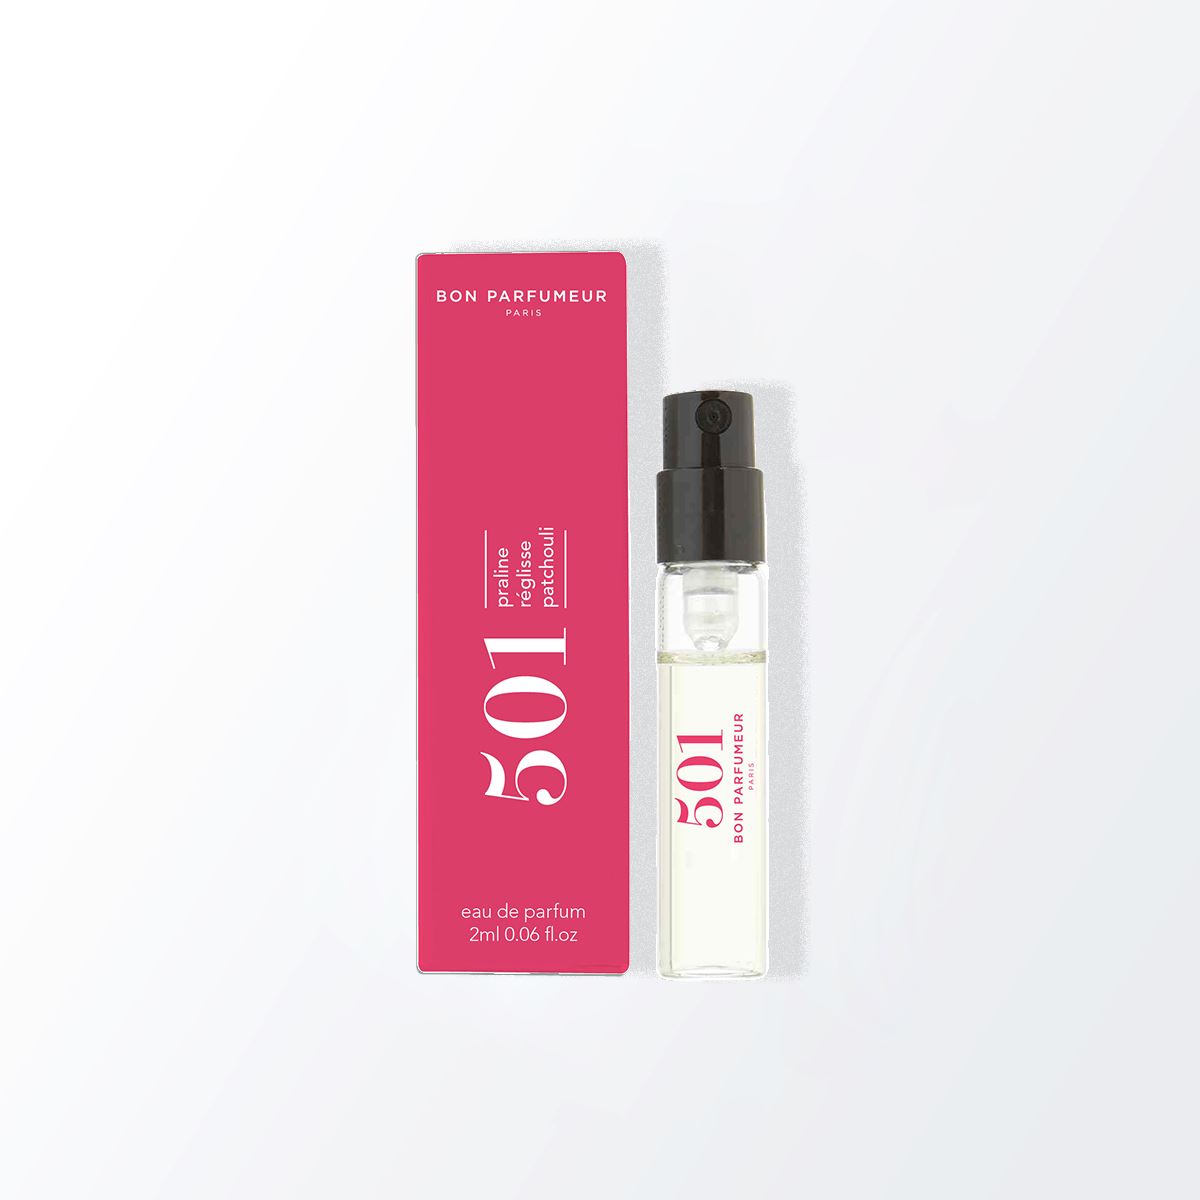 Spray parfumé payant Bon Parfumeur 501: Praline, réglisse, patchouli 